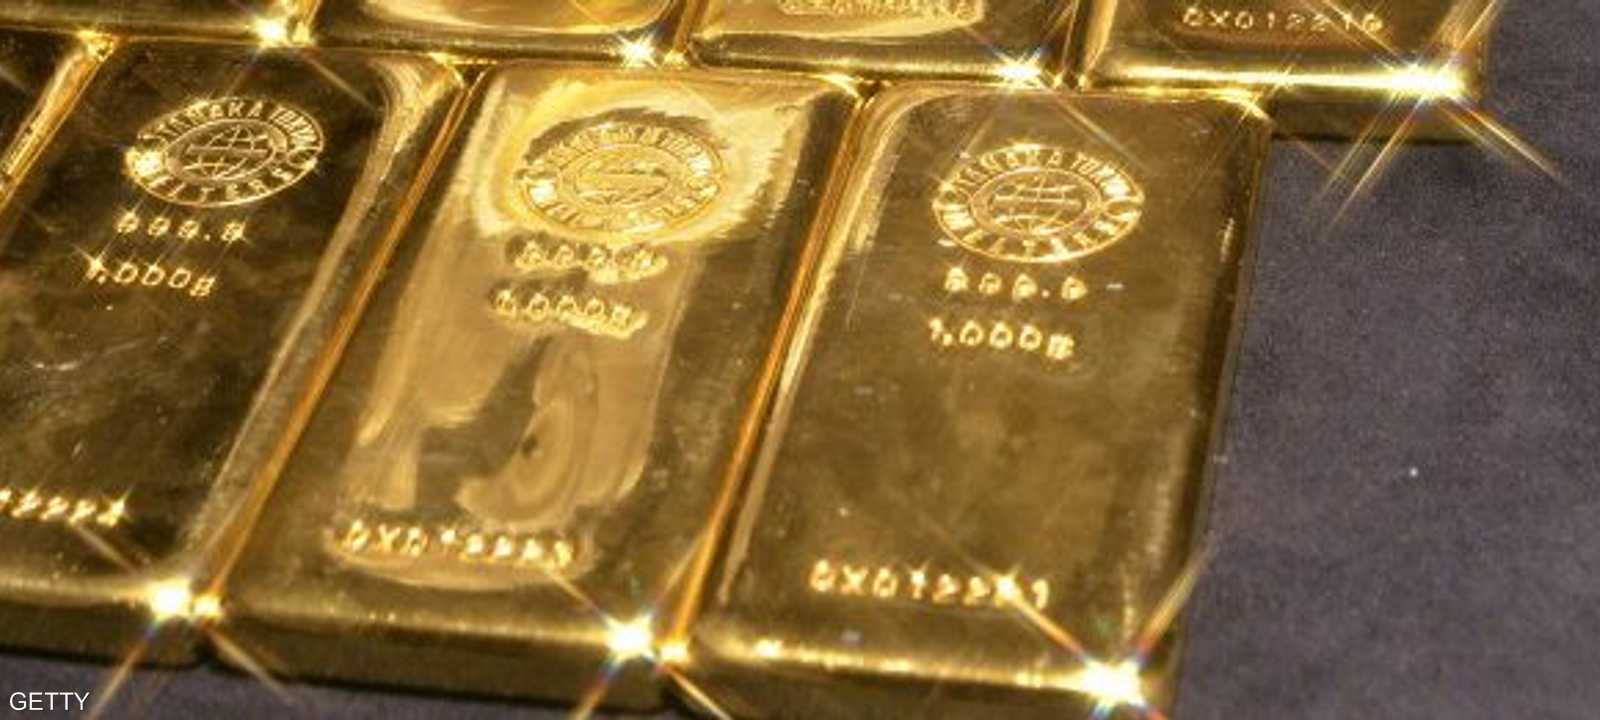 ارتفعت عقود الذهب الأميركية إلى 1319 دولار